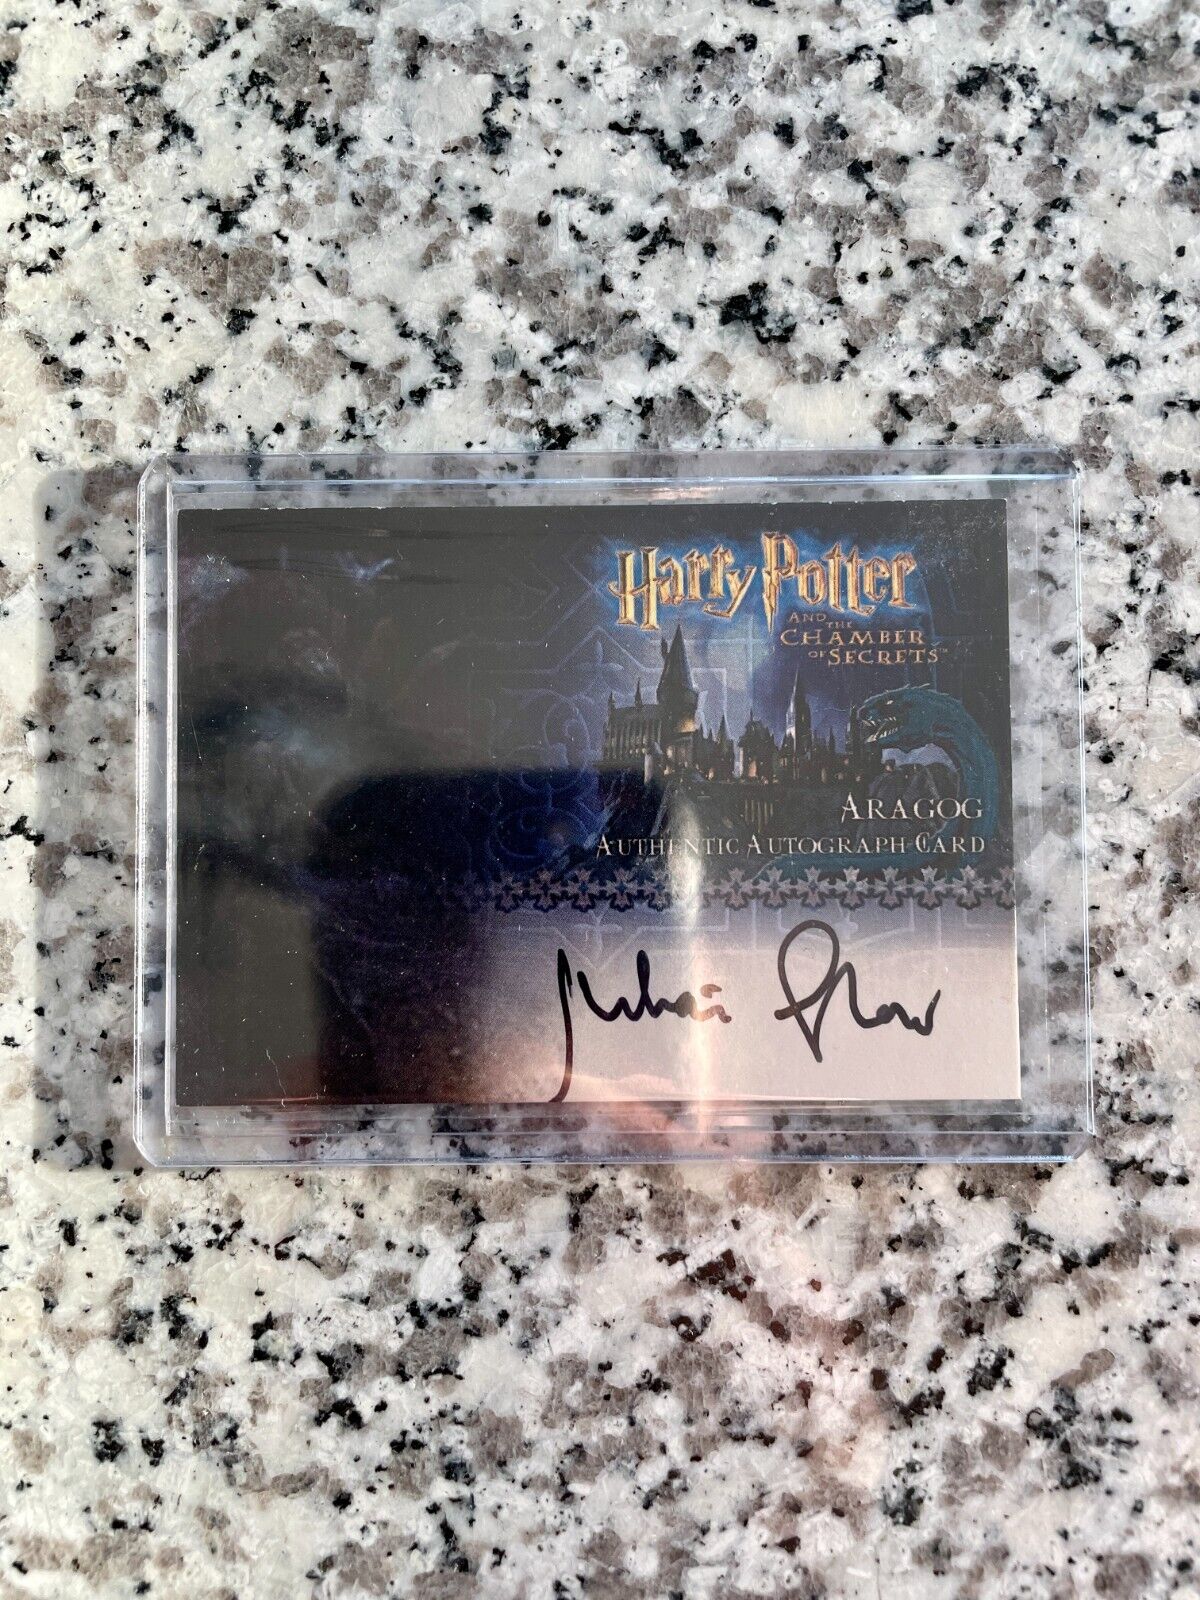 Harry Potter - Chamber of Secrets - Julian Glover/Aragog Autograph Card